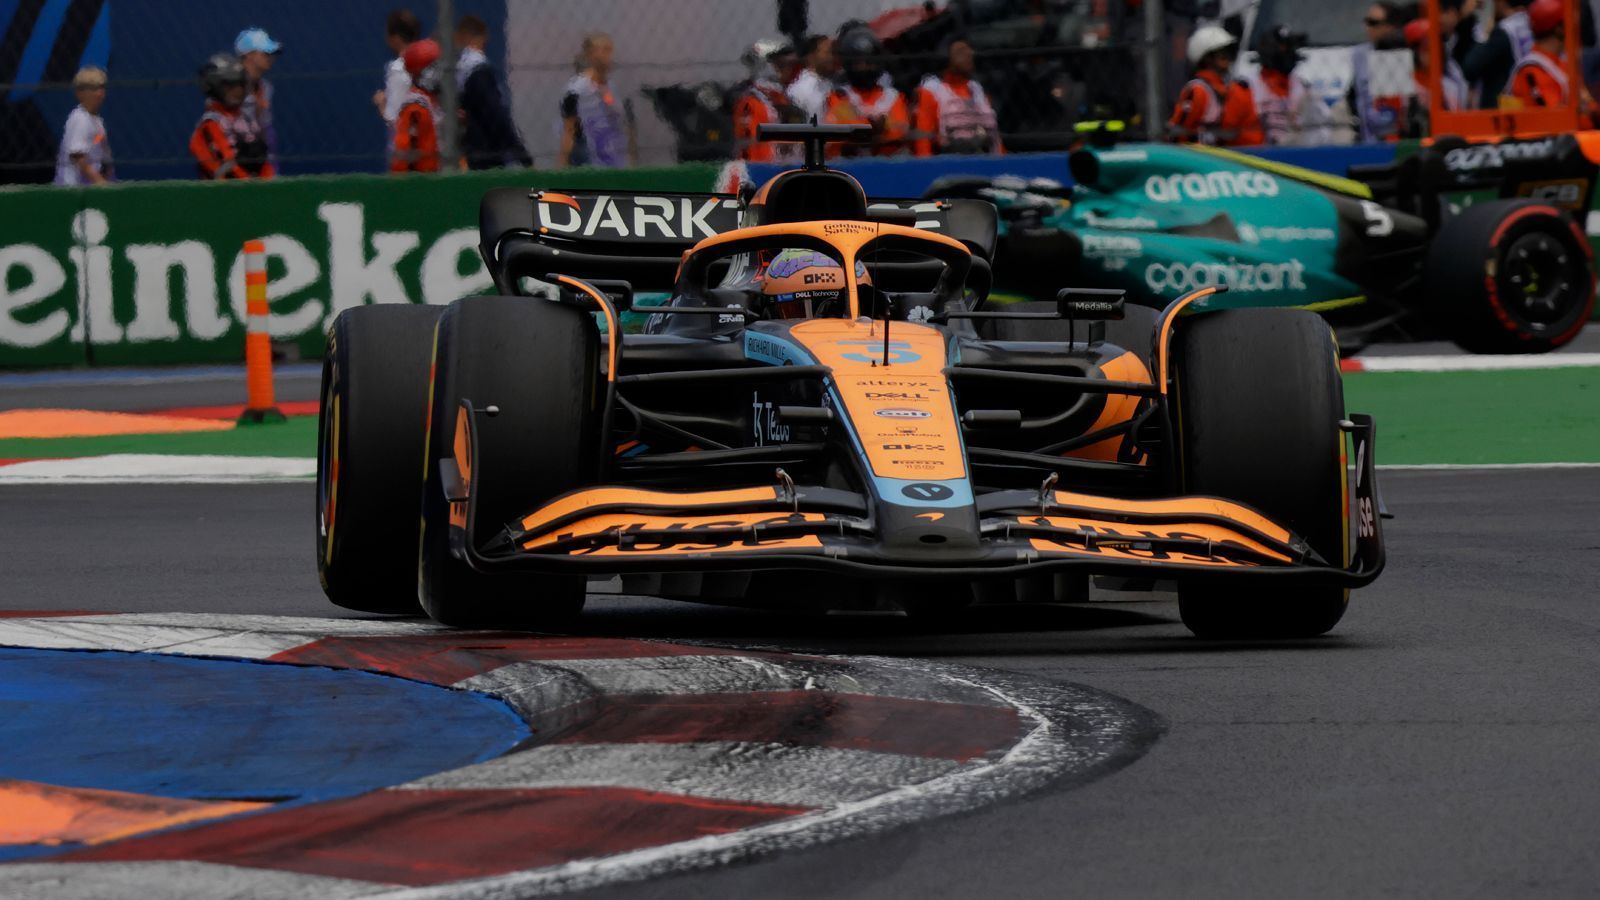 
                <strong>Gewinner: Daniel Ricciardo</strong><br>
                Ein Befreiungsschlag für den Australier. Daniel Ricciardo sammelt mit Platz sieben in Mexiko wichtige Argumente für zukünftige Engagements bei anderen Rennställen. Nach der Vertragsauflösung des 33-Jährigen ist der sympathische Fahrer aus Down Under nämlich immer noch ohne Cockpit für die neue Saison. Zwar rammte er im Rennen Yuki Tsunoda aus dem Weg und kassierte dafür eine Zehn-Sekunden-Strafe, umso bemerkenswerter war jedoch, wie er damit umging. Der Australier ließ sich nicht beirren und fuhr letztlich sogar mehr als zehn Sekunden auf seinen ärgsten Verfolger Esteban Ocon heraus, sodass er seinen siebten Platz behalten durfte und wichtige Zähler im Kampf gegen Alpine sammelte. Ein würdiger Fahrer des Tages.
              